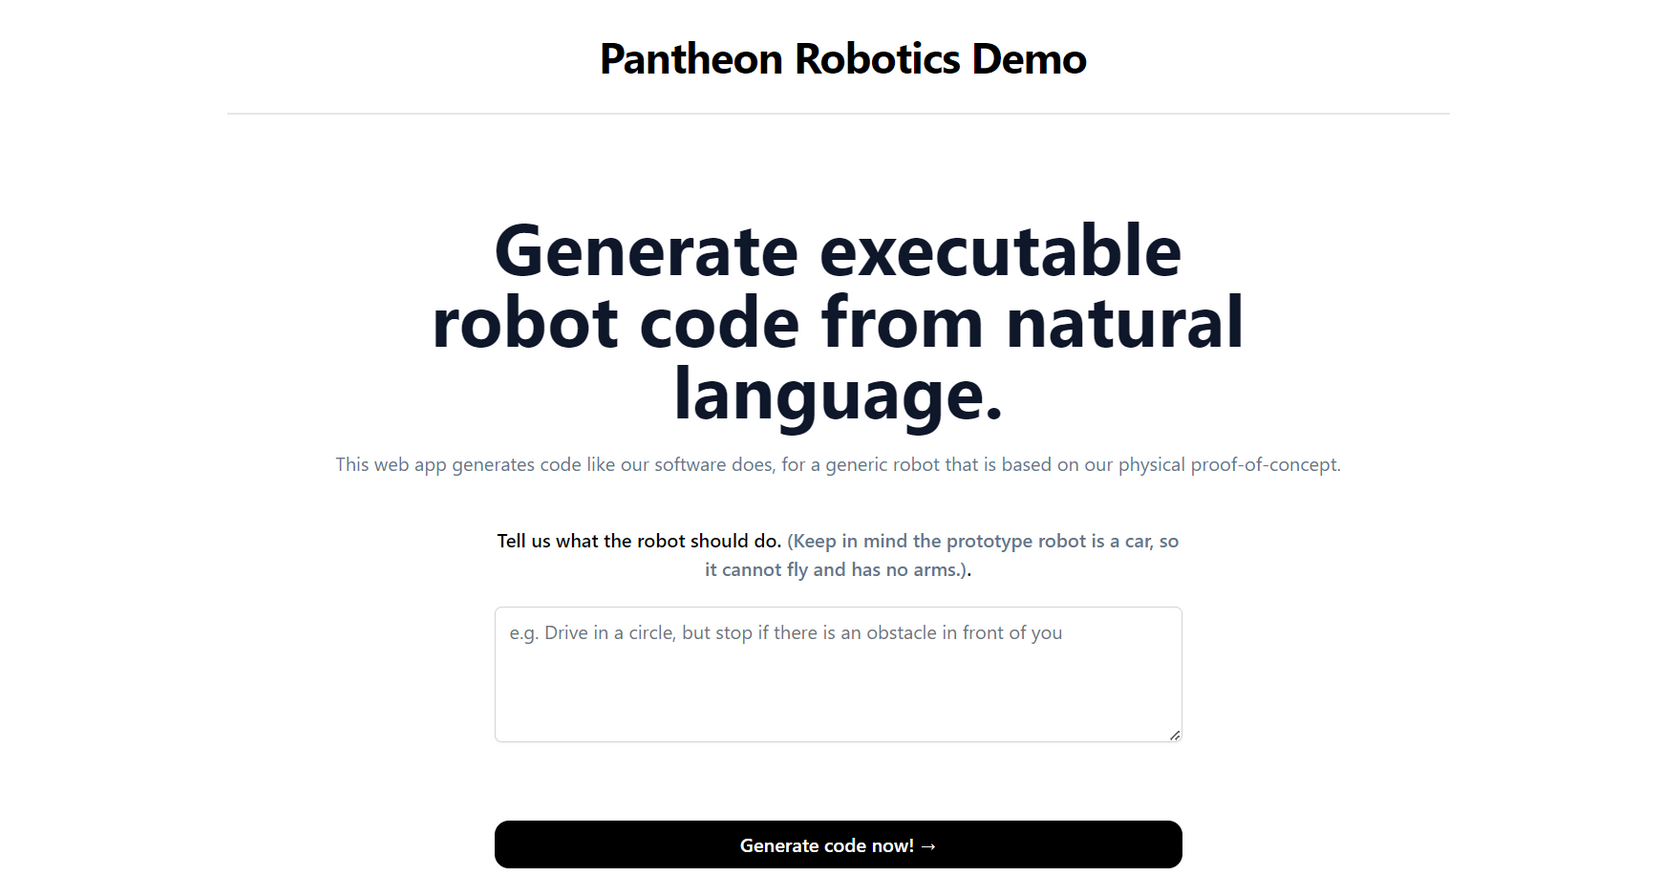 ThemotherAI - Pantheon Robotics